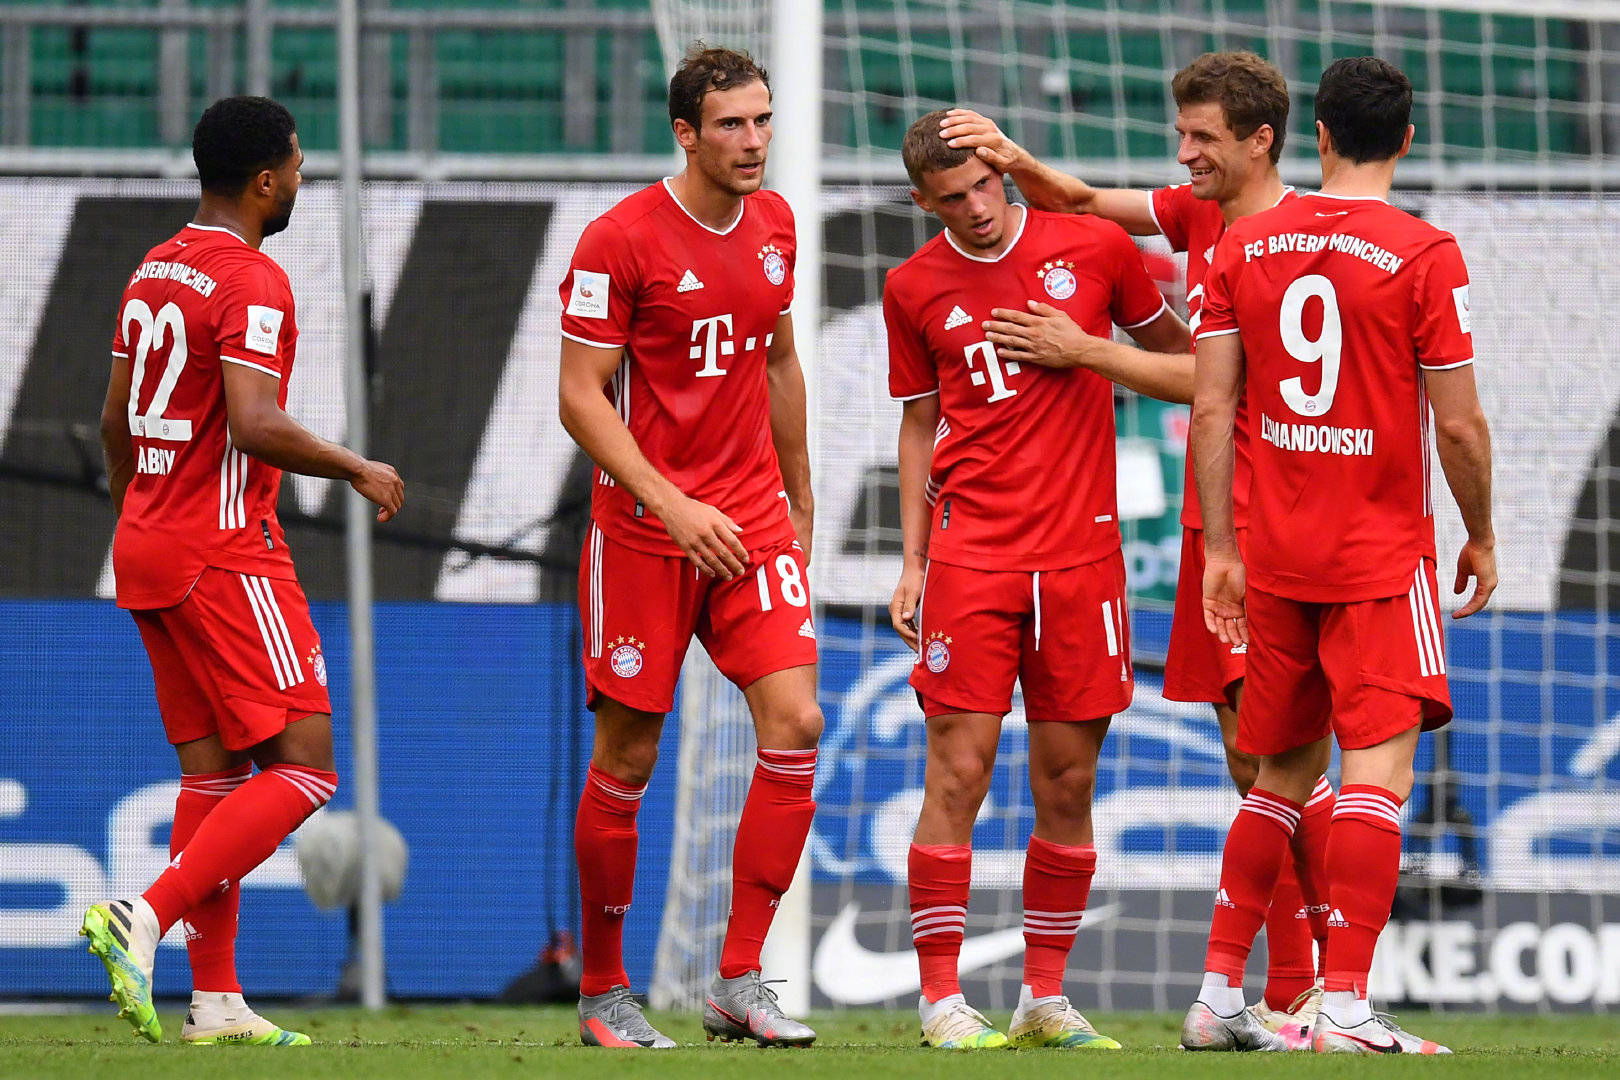 德甲第34轮拜仁慕尼黑客场4:0沃尔夫斯堡,赛后拜仁球员庆祝夺冠